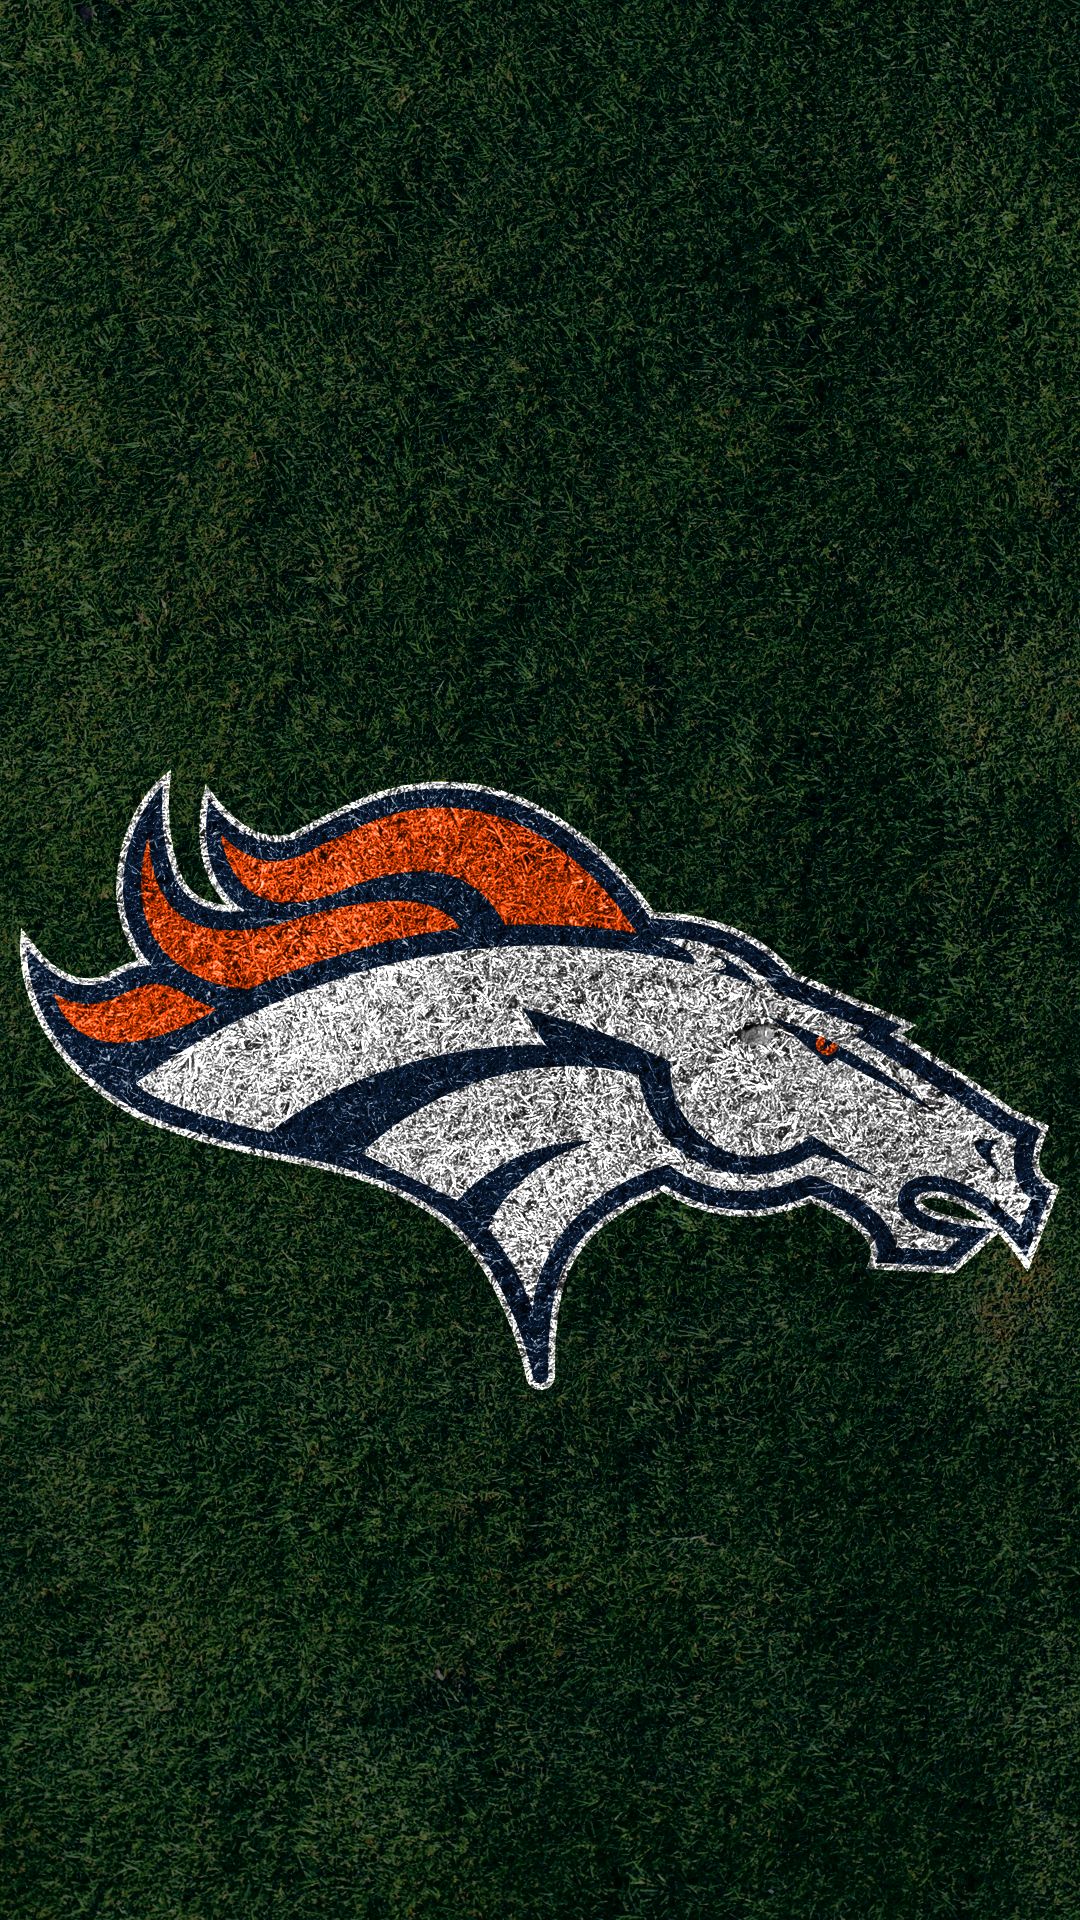 Download mobile wallpaper Sports, Football, Logo, Emblem, Denver Broncos, Nfl for free.